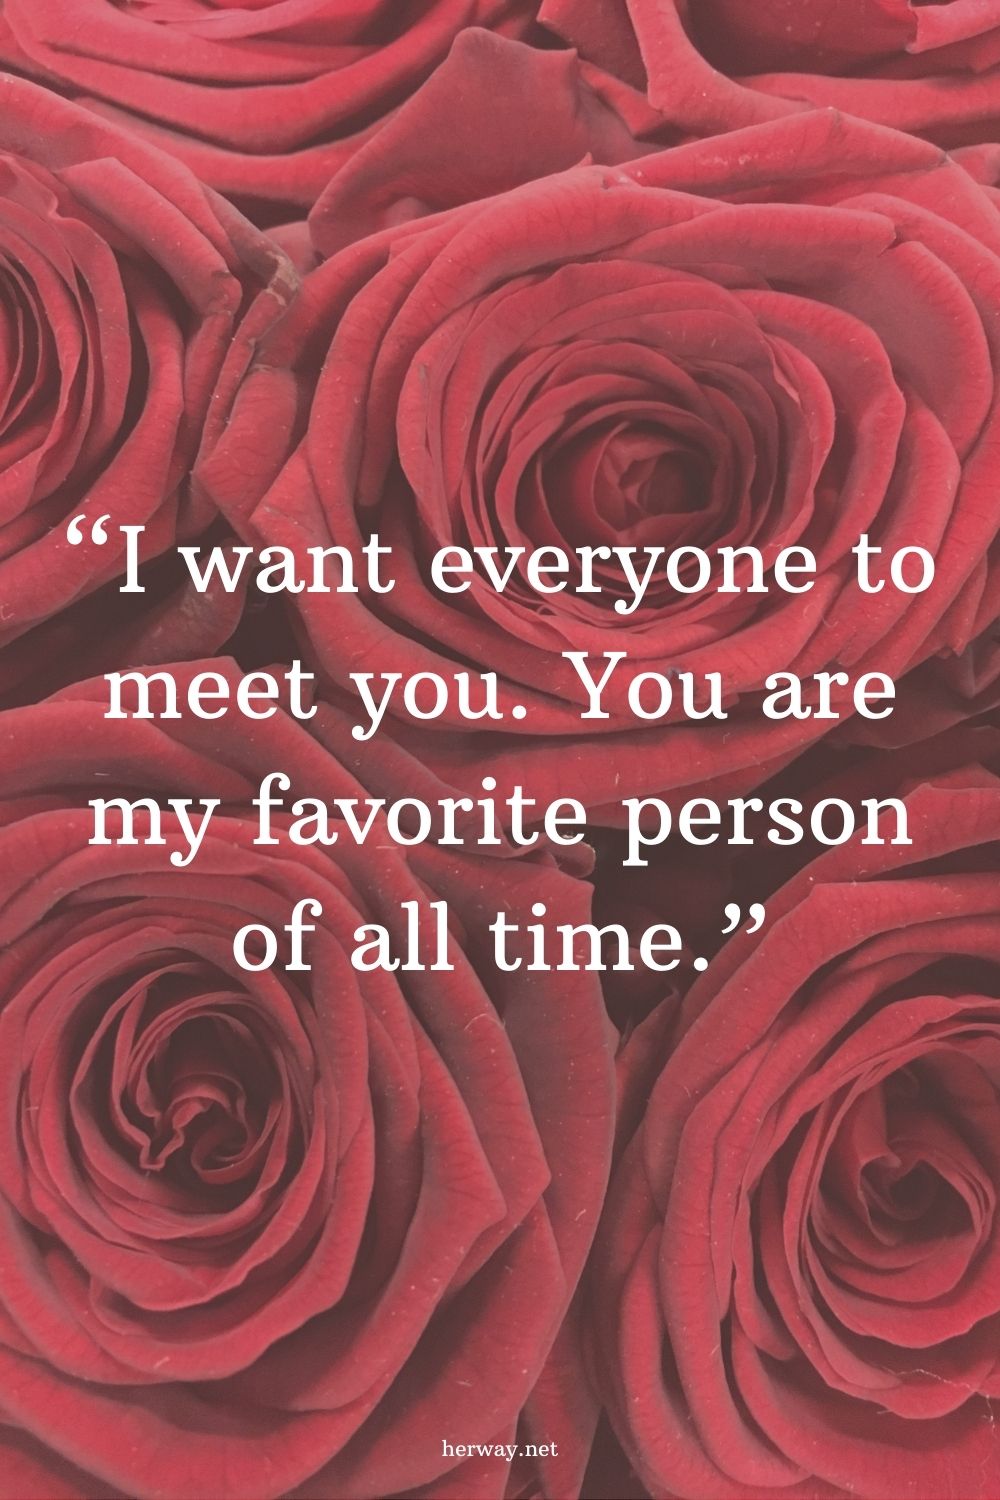 150 modi creativi per dire "ti amo" alla tua persona speciale 